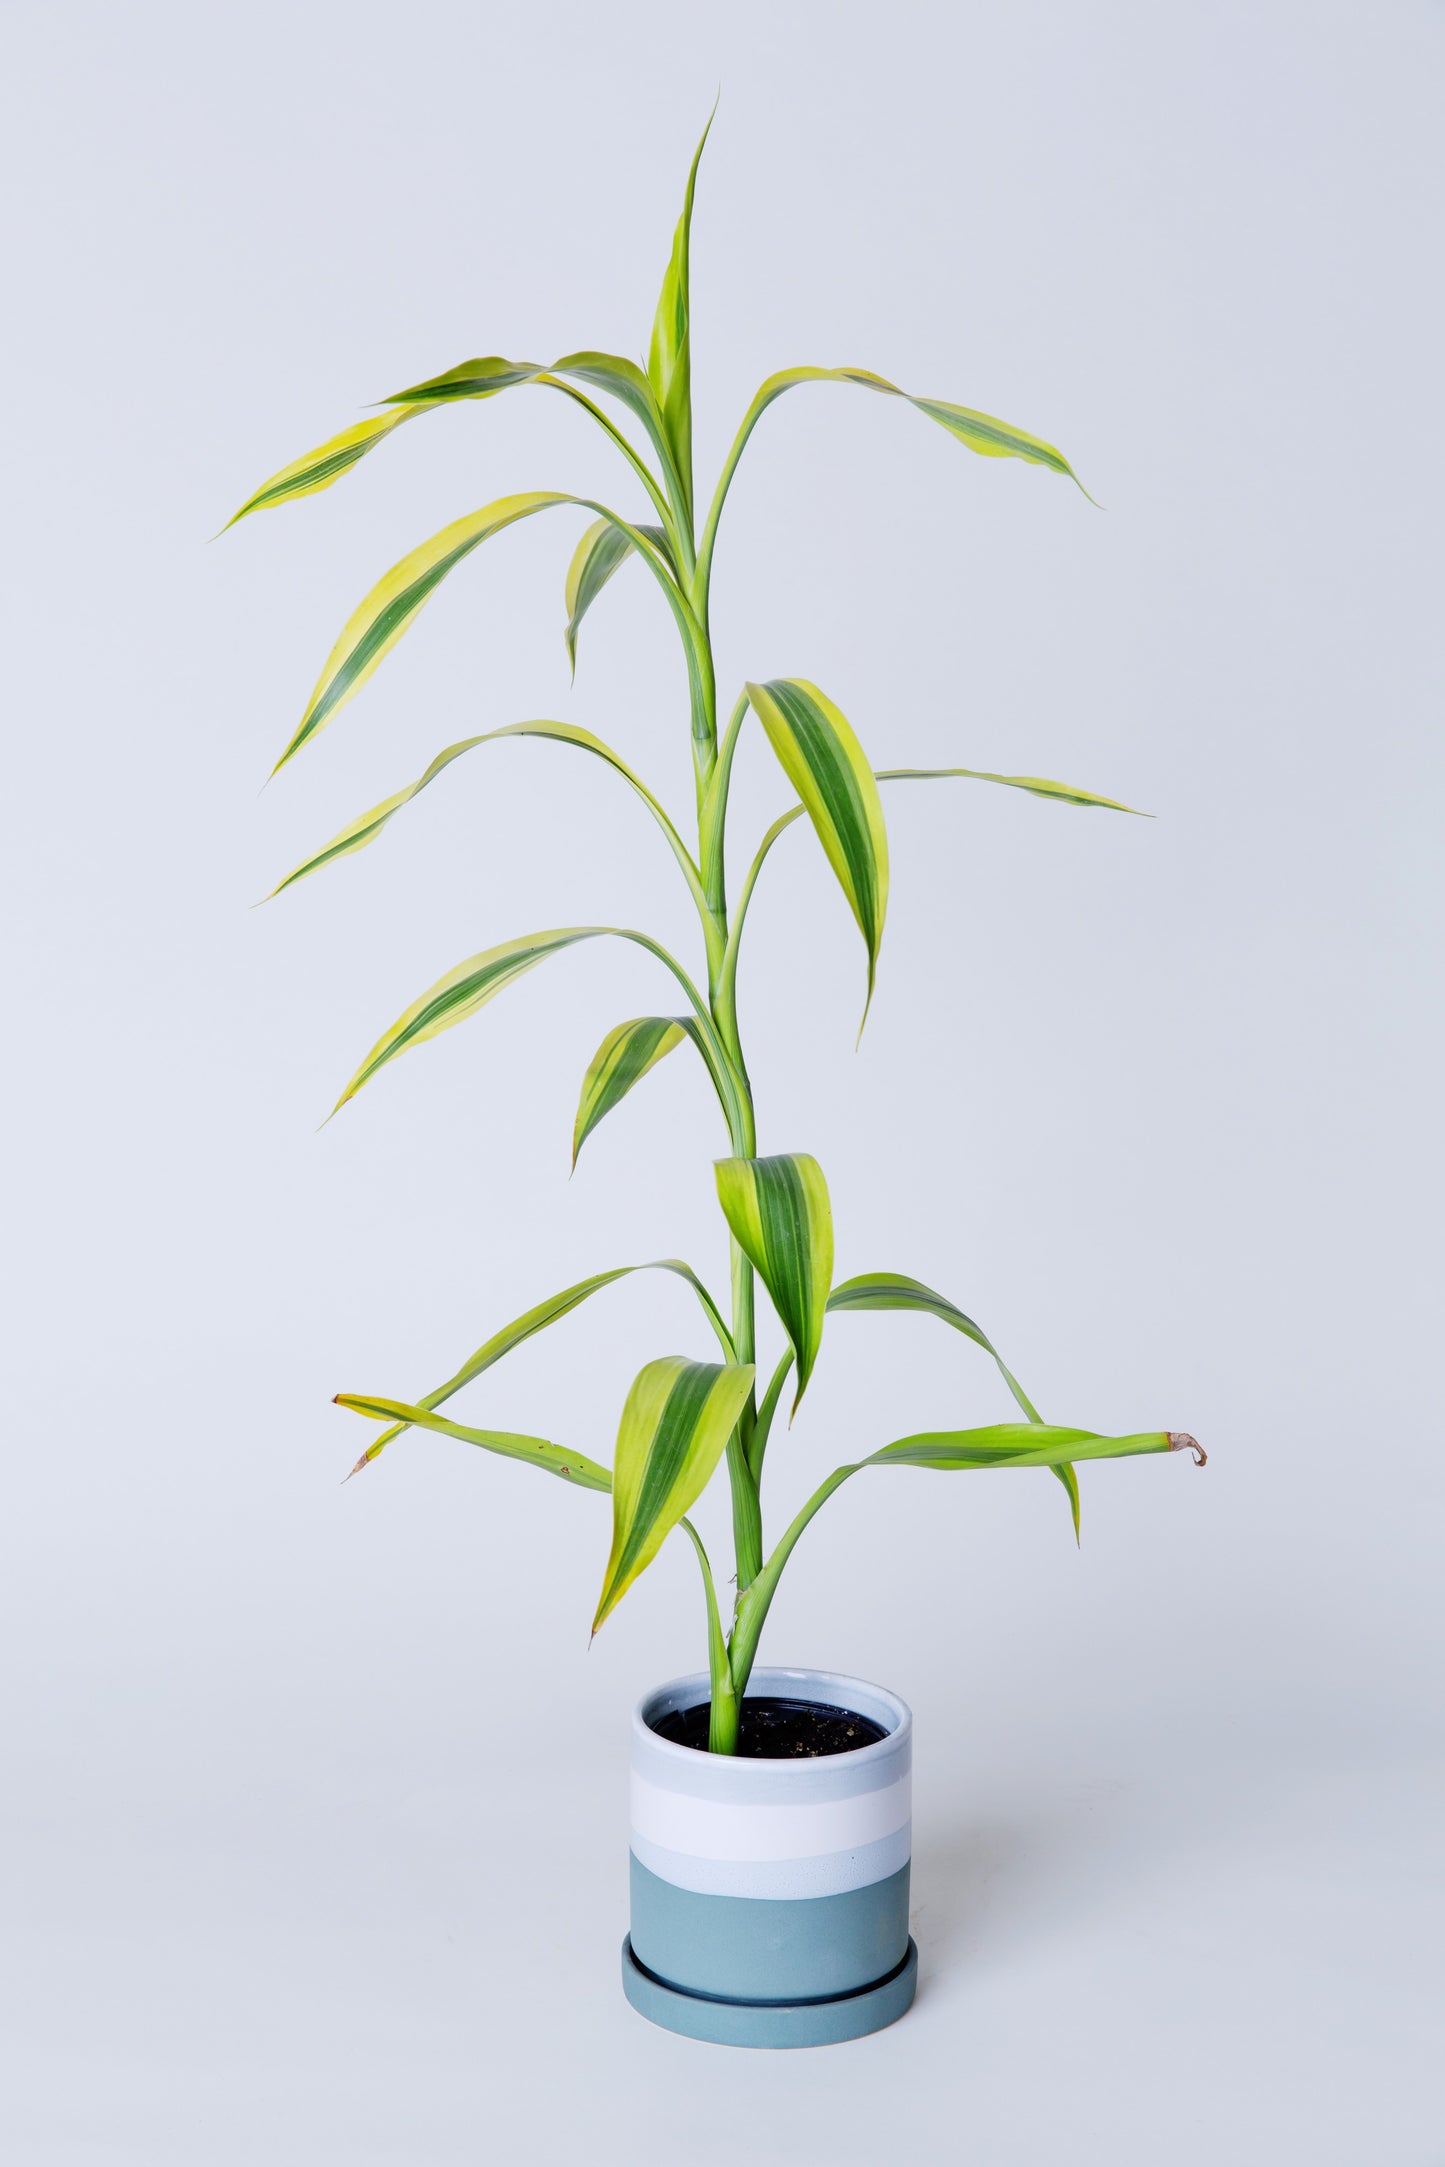 Lucky Bamboo Plant | Dracaena Sanderiana